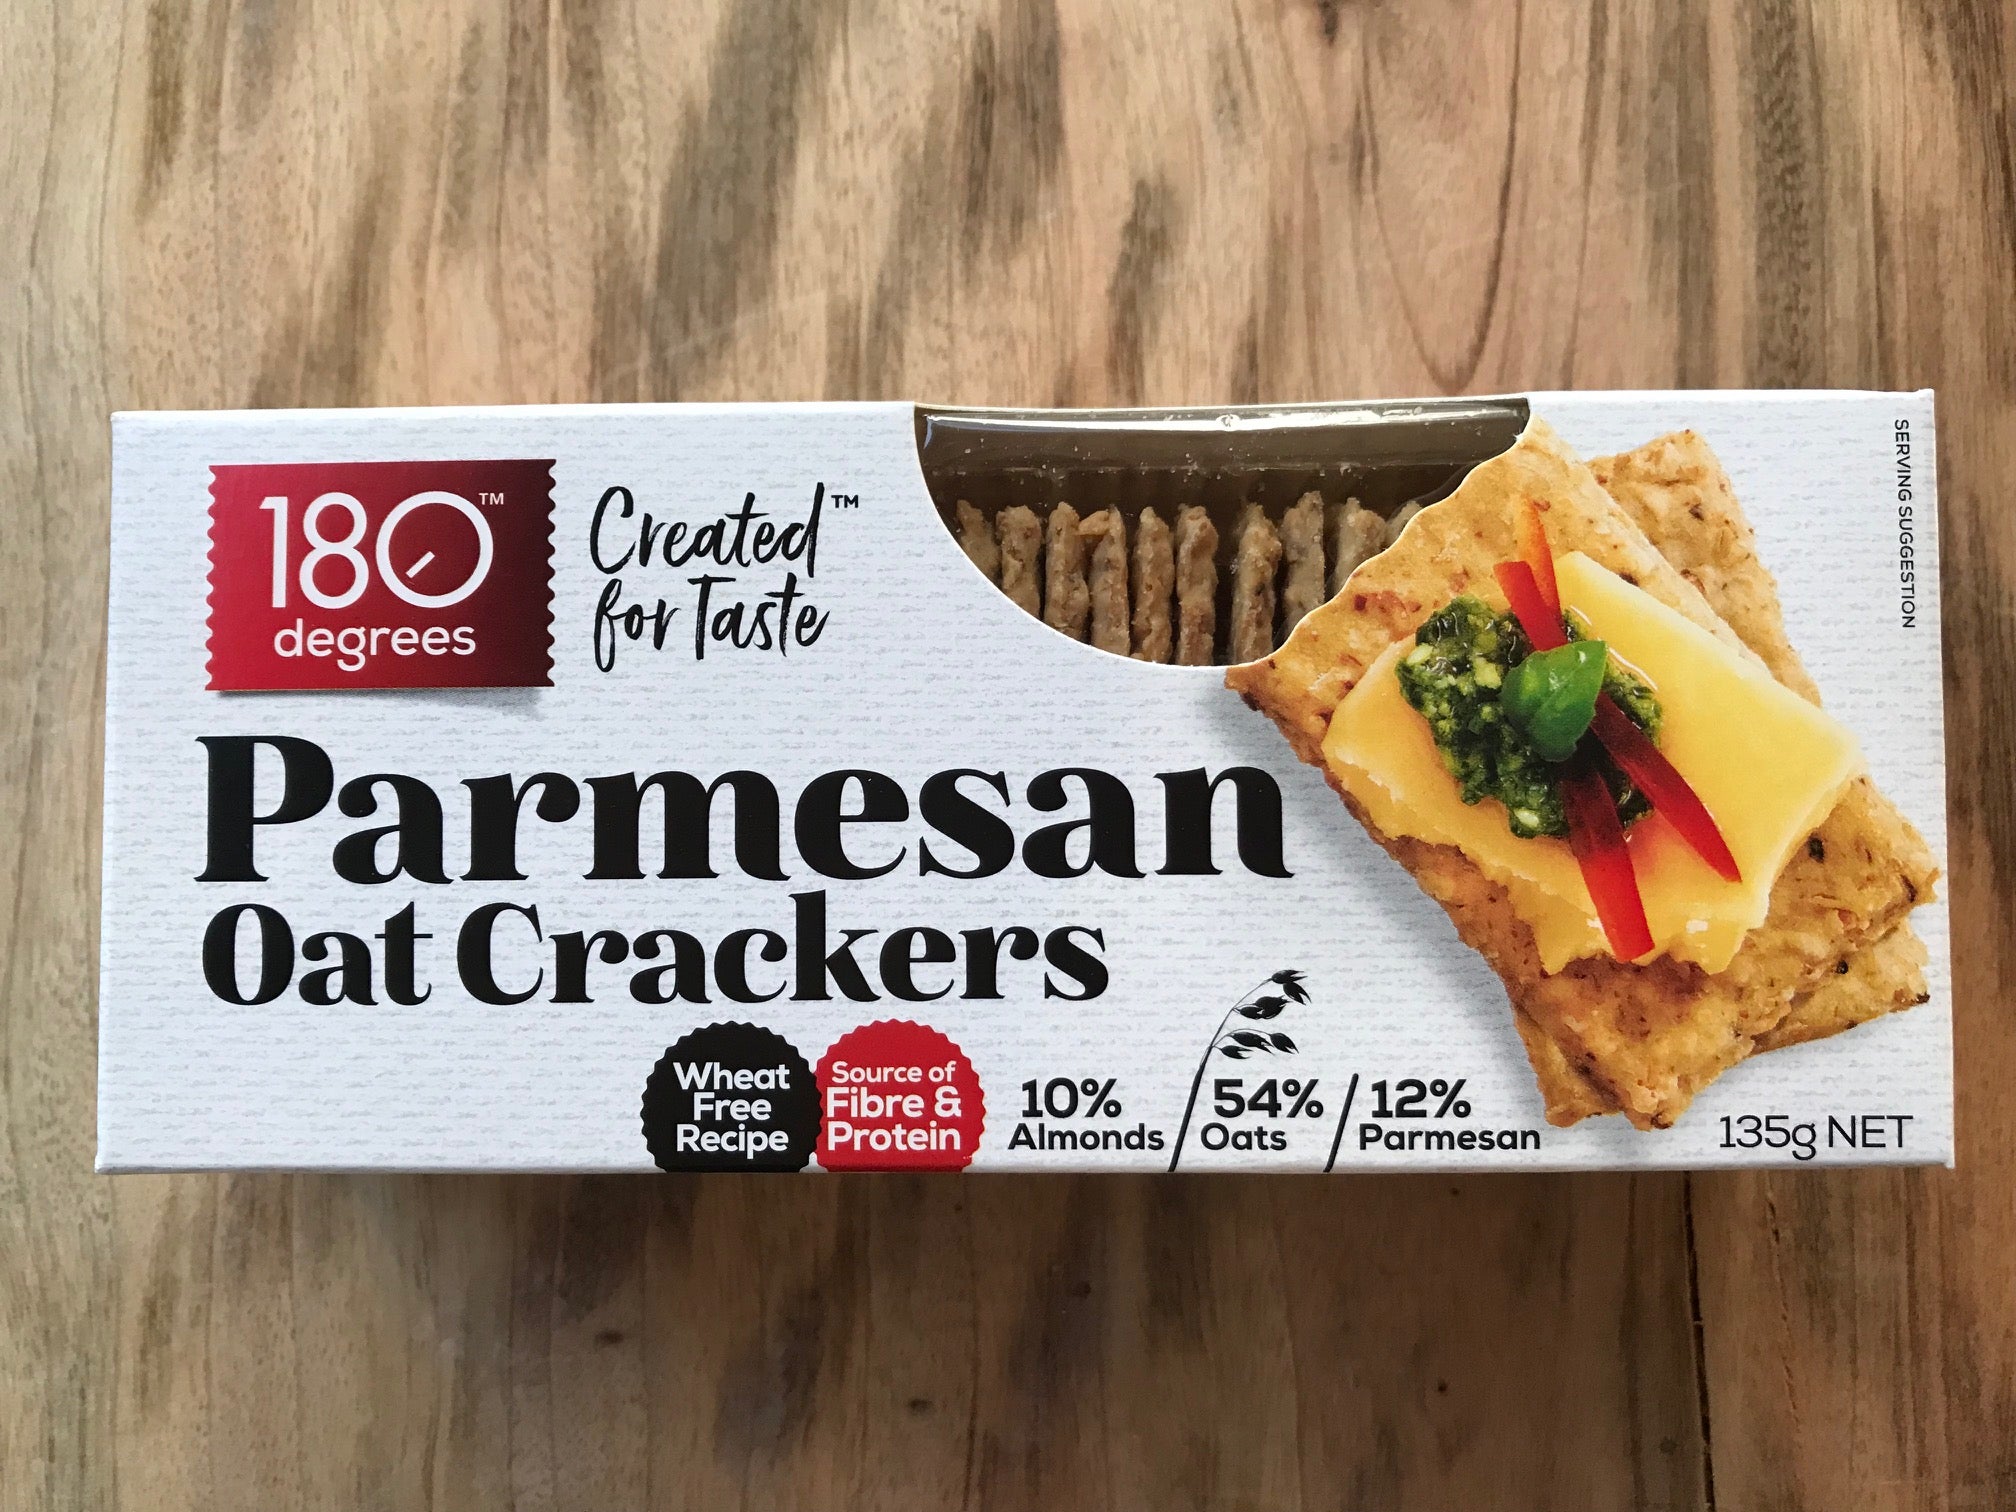 Parmesan Oat Crackers